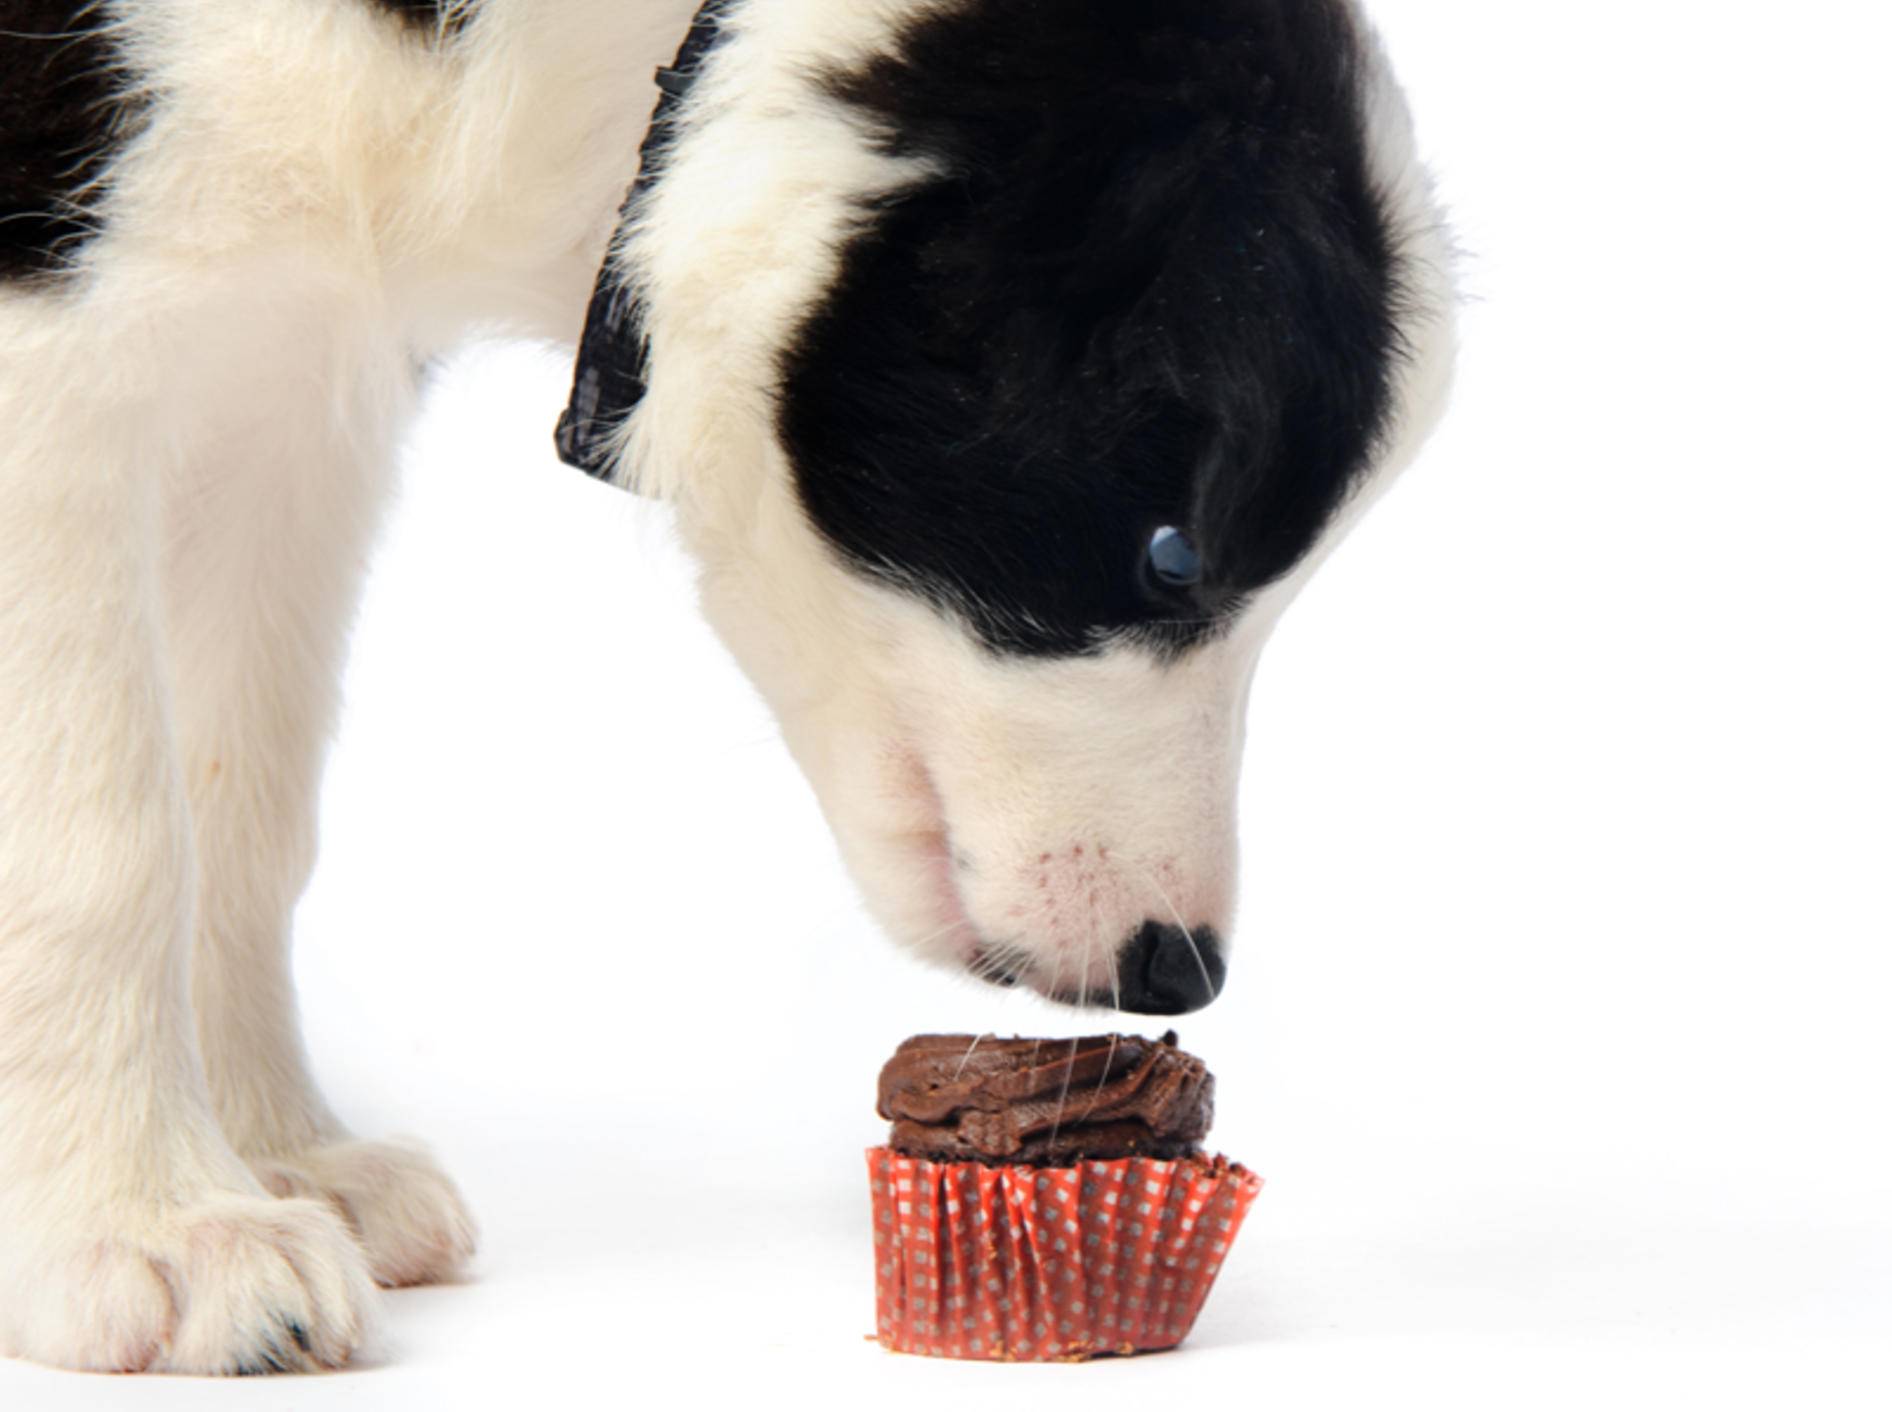 Zu den Symptomen einer Schokoladenvergiftung beim Hund zählen Krämpfe und Erbrechen